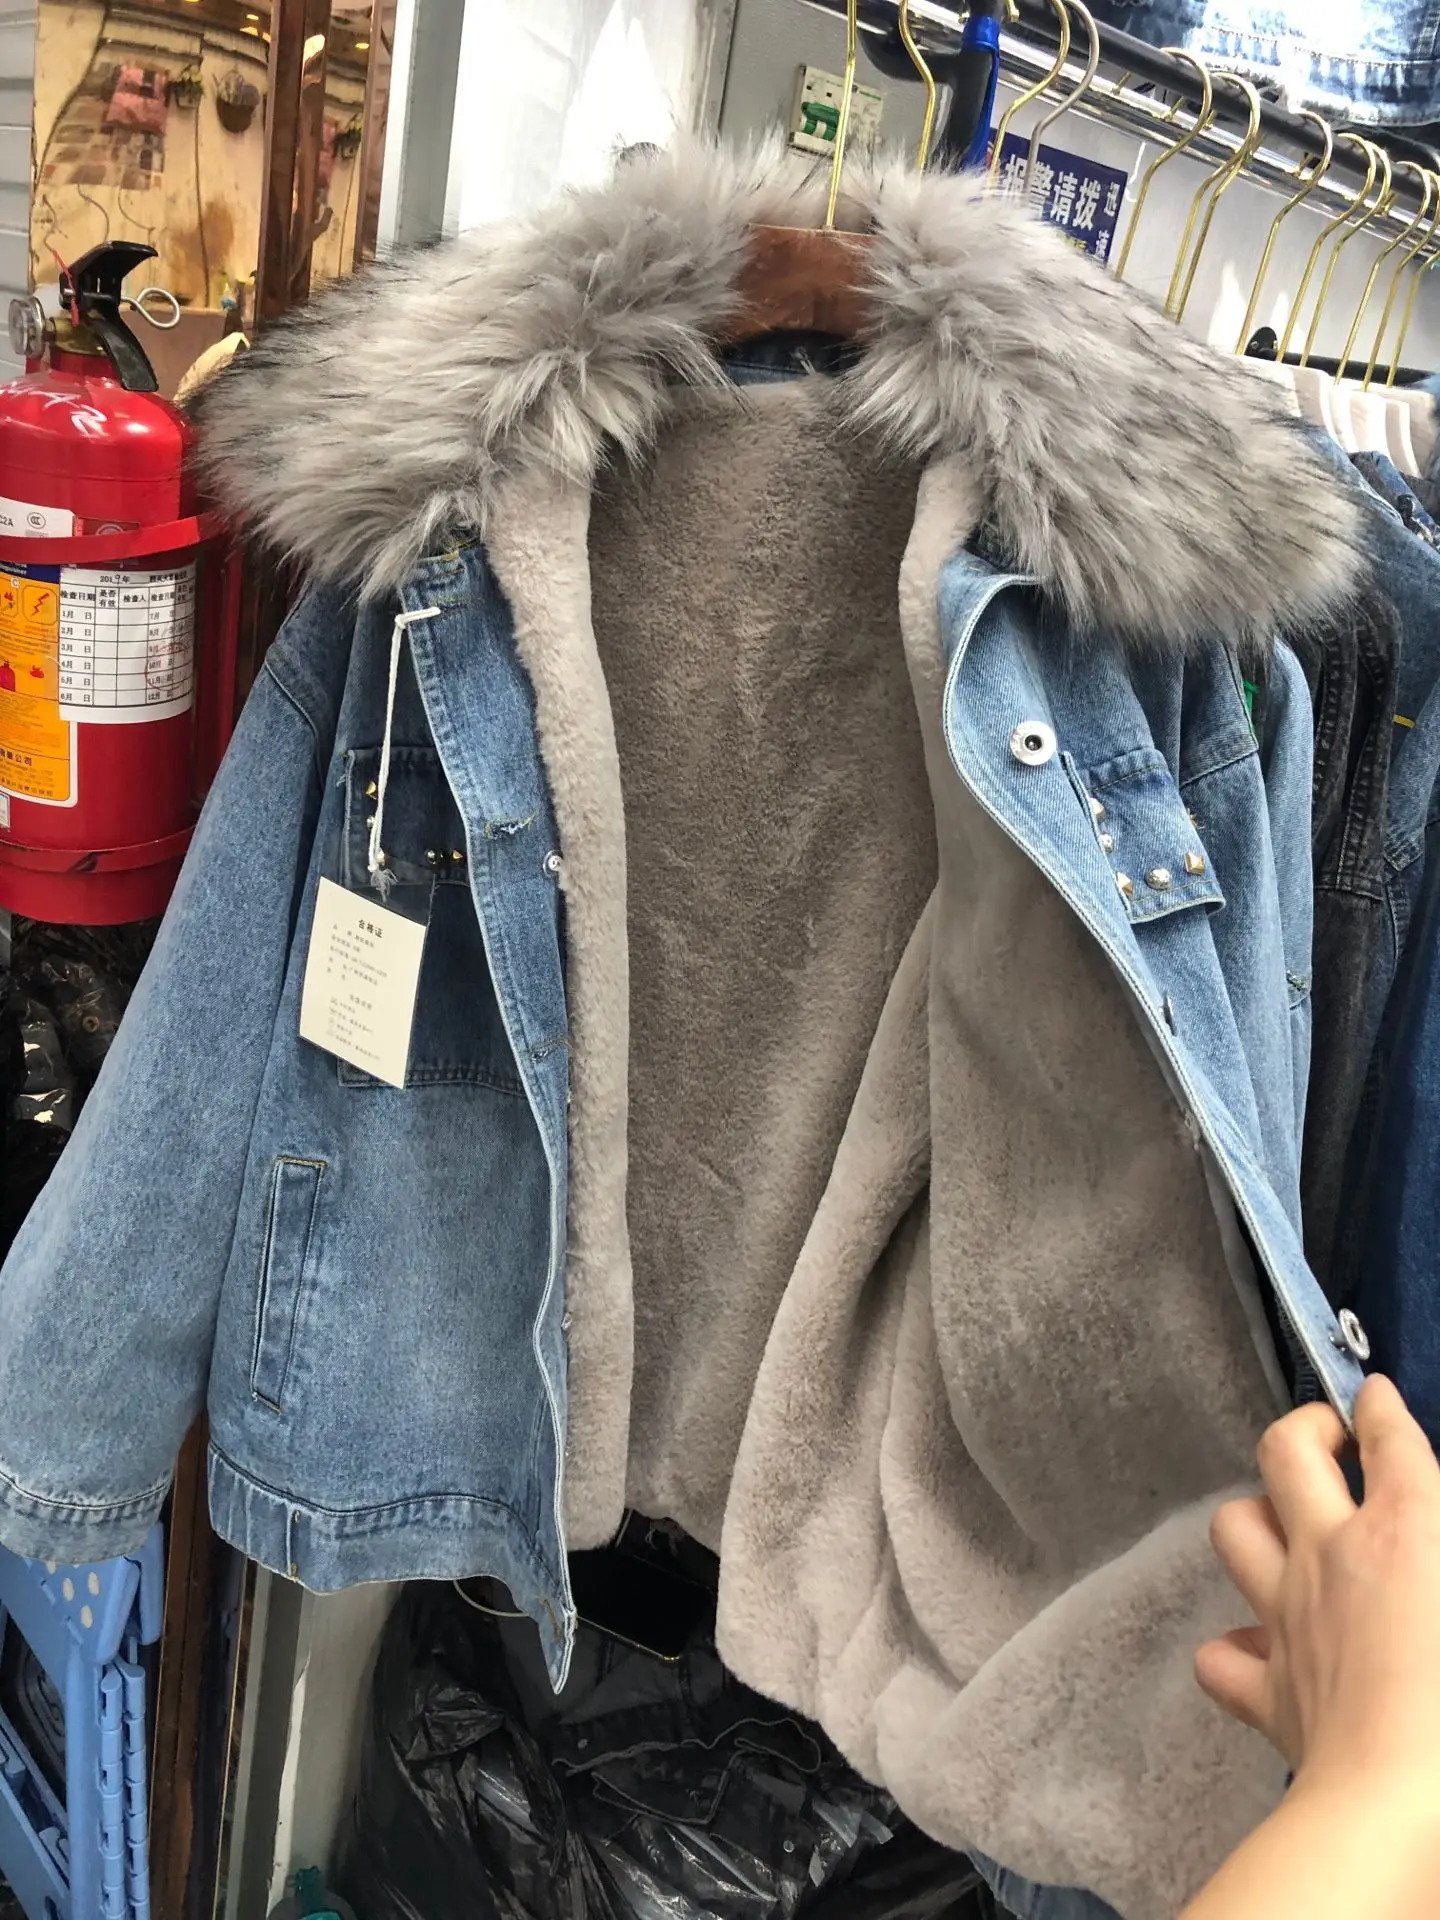 Джинсовая куртка и пальто Женская свободная куртка из искусственного флиса бойфренд джинсовая куртка-бомбер вышитая хлопковая парка уличные пальто